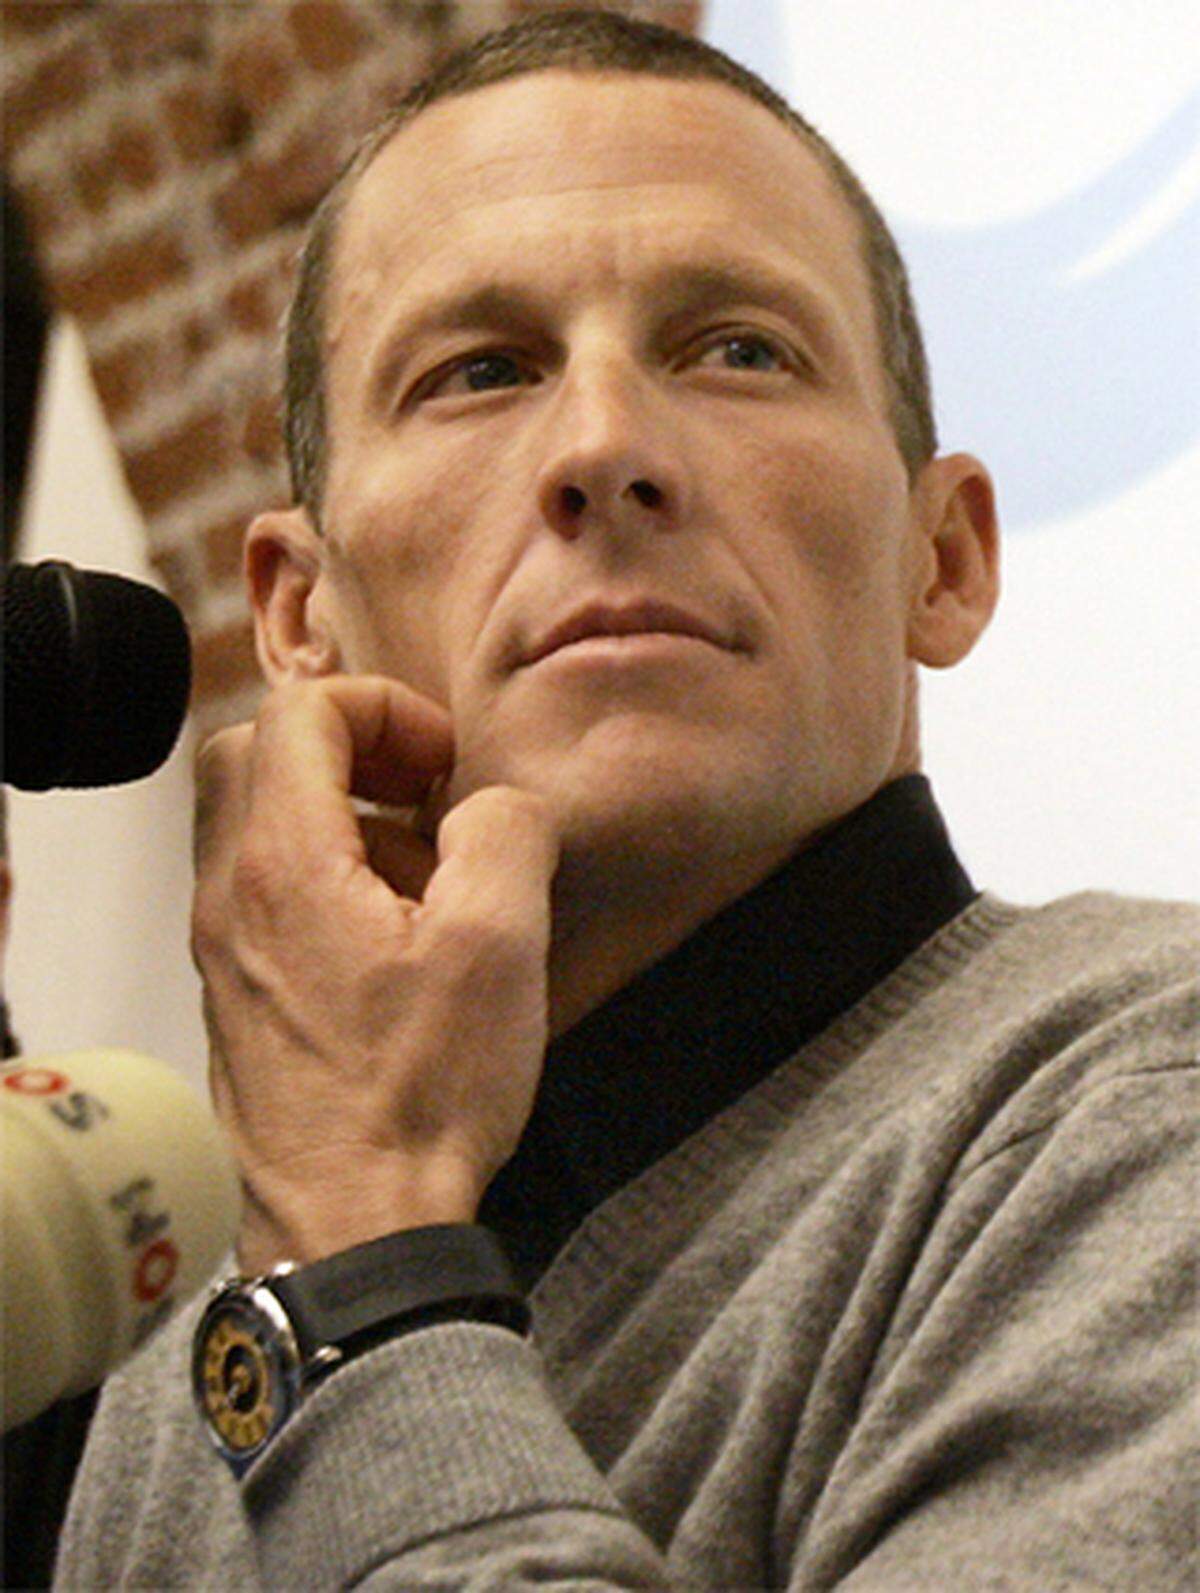 3,6 Millionen Twitter-Follower hat Armstrong.Warum er twittert? "Auf Twitter, das bist nur du selbst, dort kannst du nicht falsch zitiert werden", sagt er. Sein "offizielles Statement" zur Causa: "Genug ist genug. Diese Charade der USADA ist eine Schande."